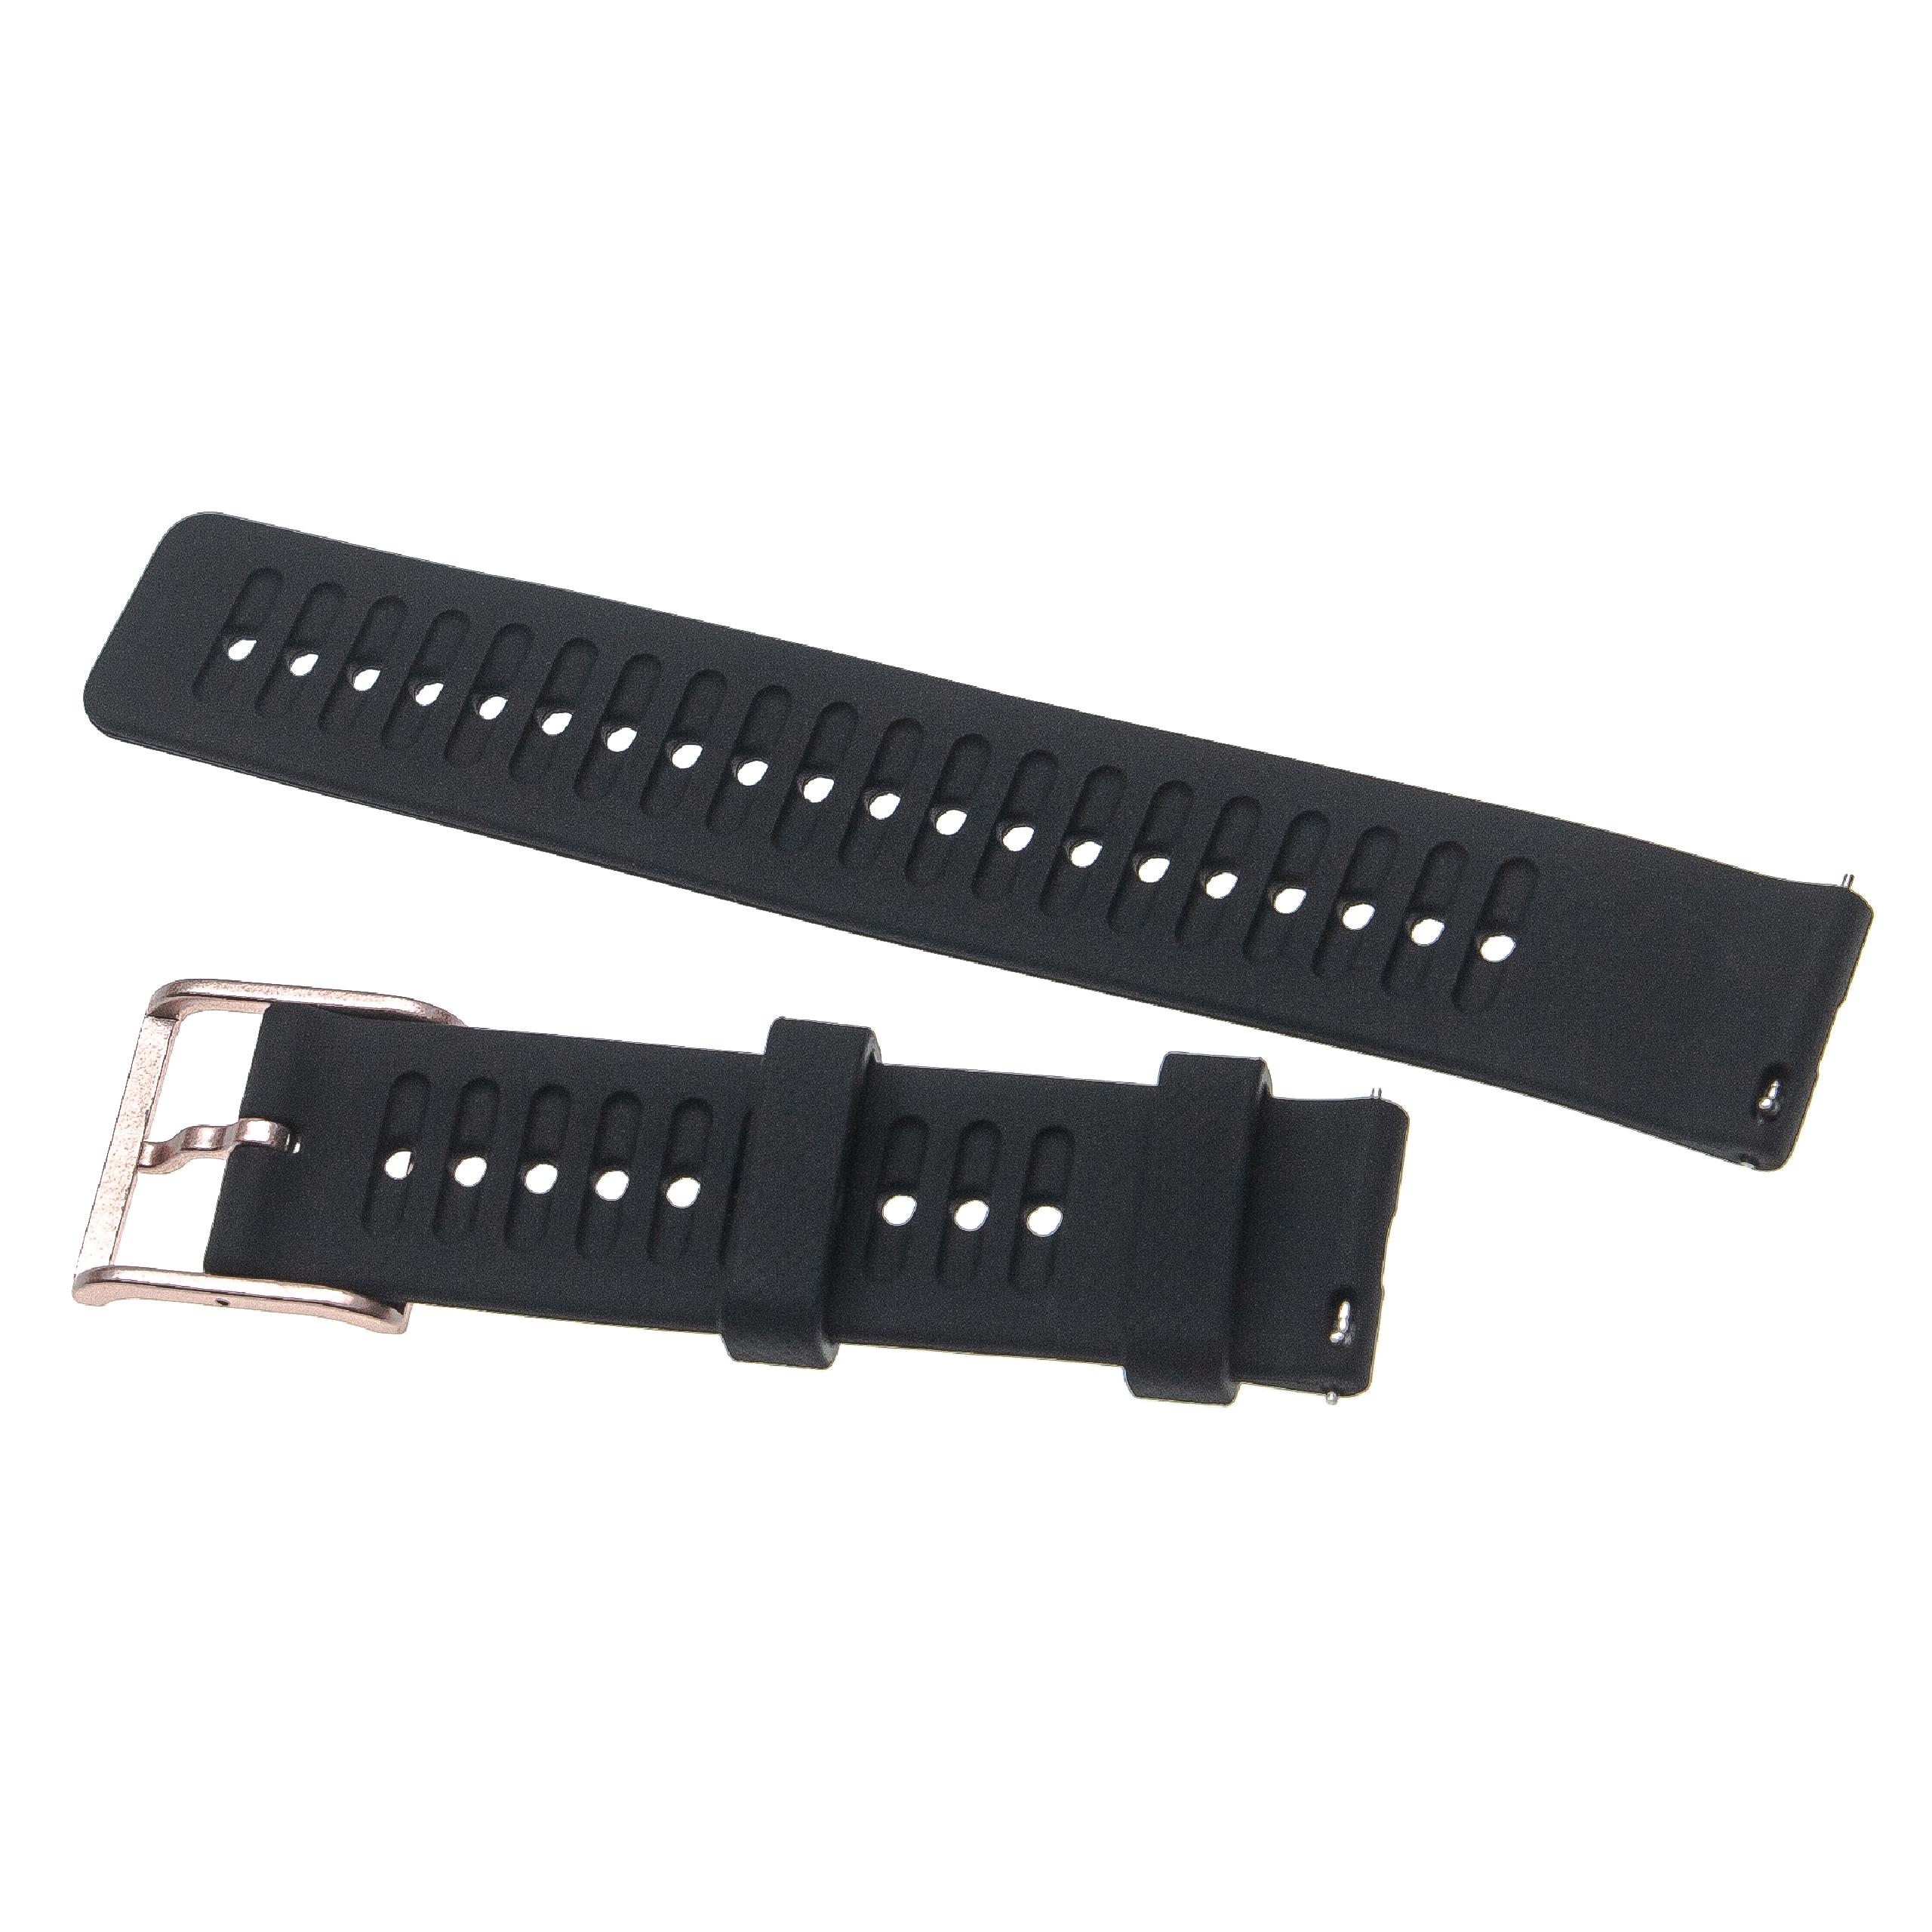 Bracelet pour montre intelligente Polar - 12,8 + 9,1 cm de long, 20mm de large, silicone, noir, rosa-metallic